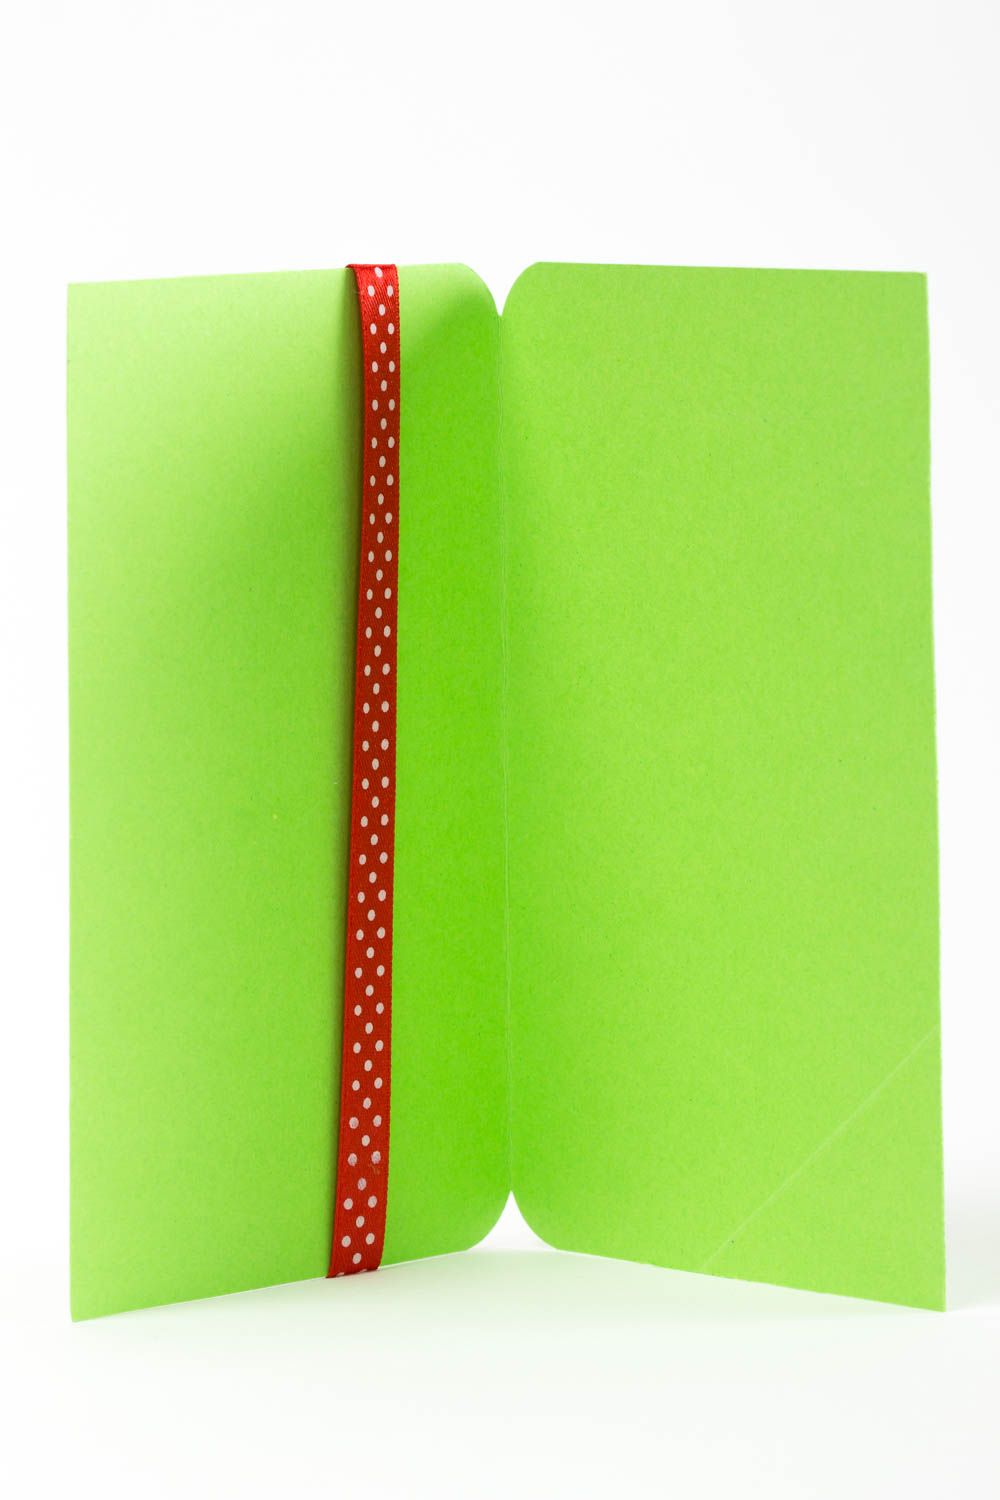 Новогодняя открытка ручной работы скрапбукинг открытка зеленая красивая открытка фото 3